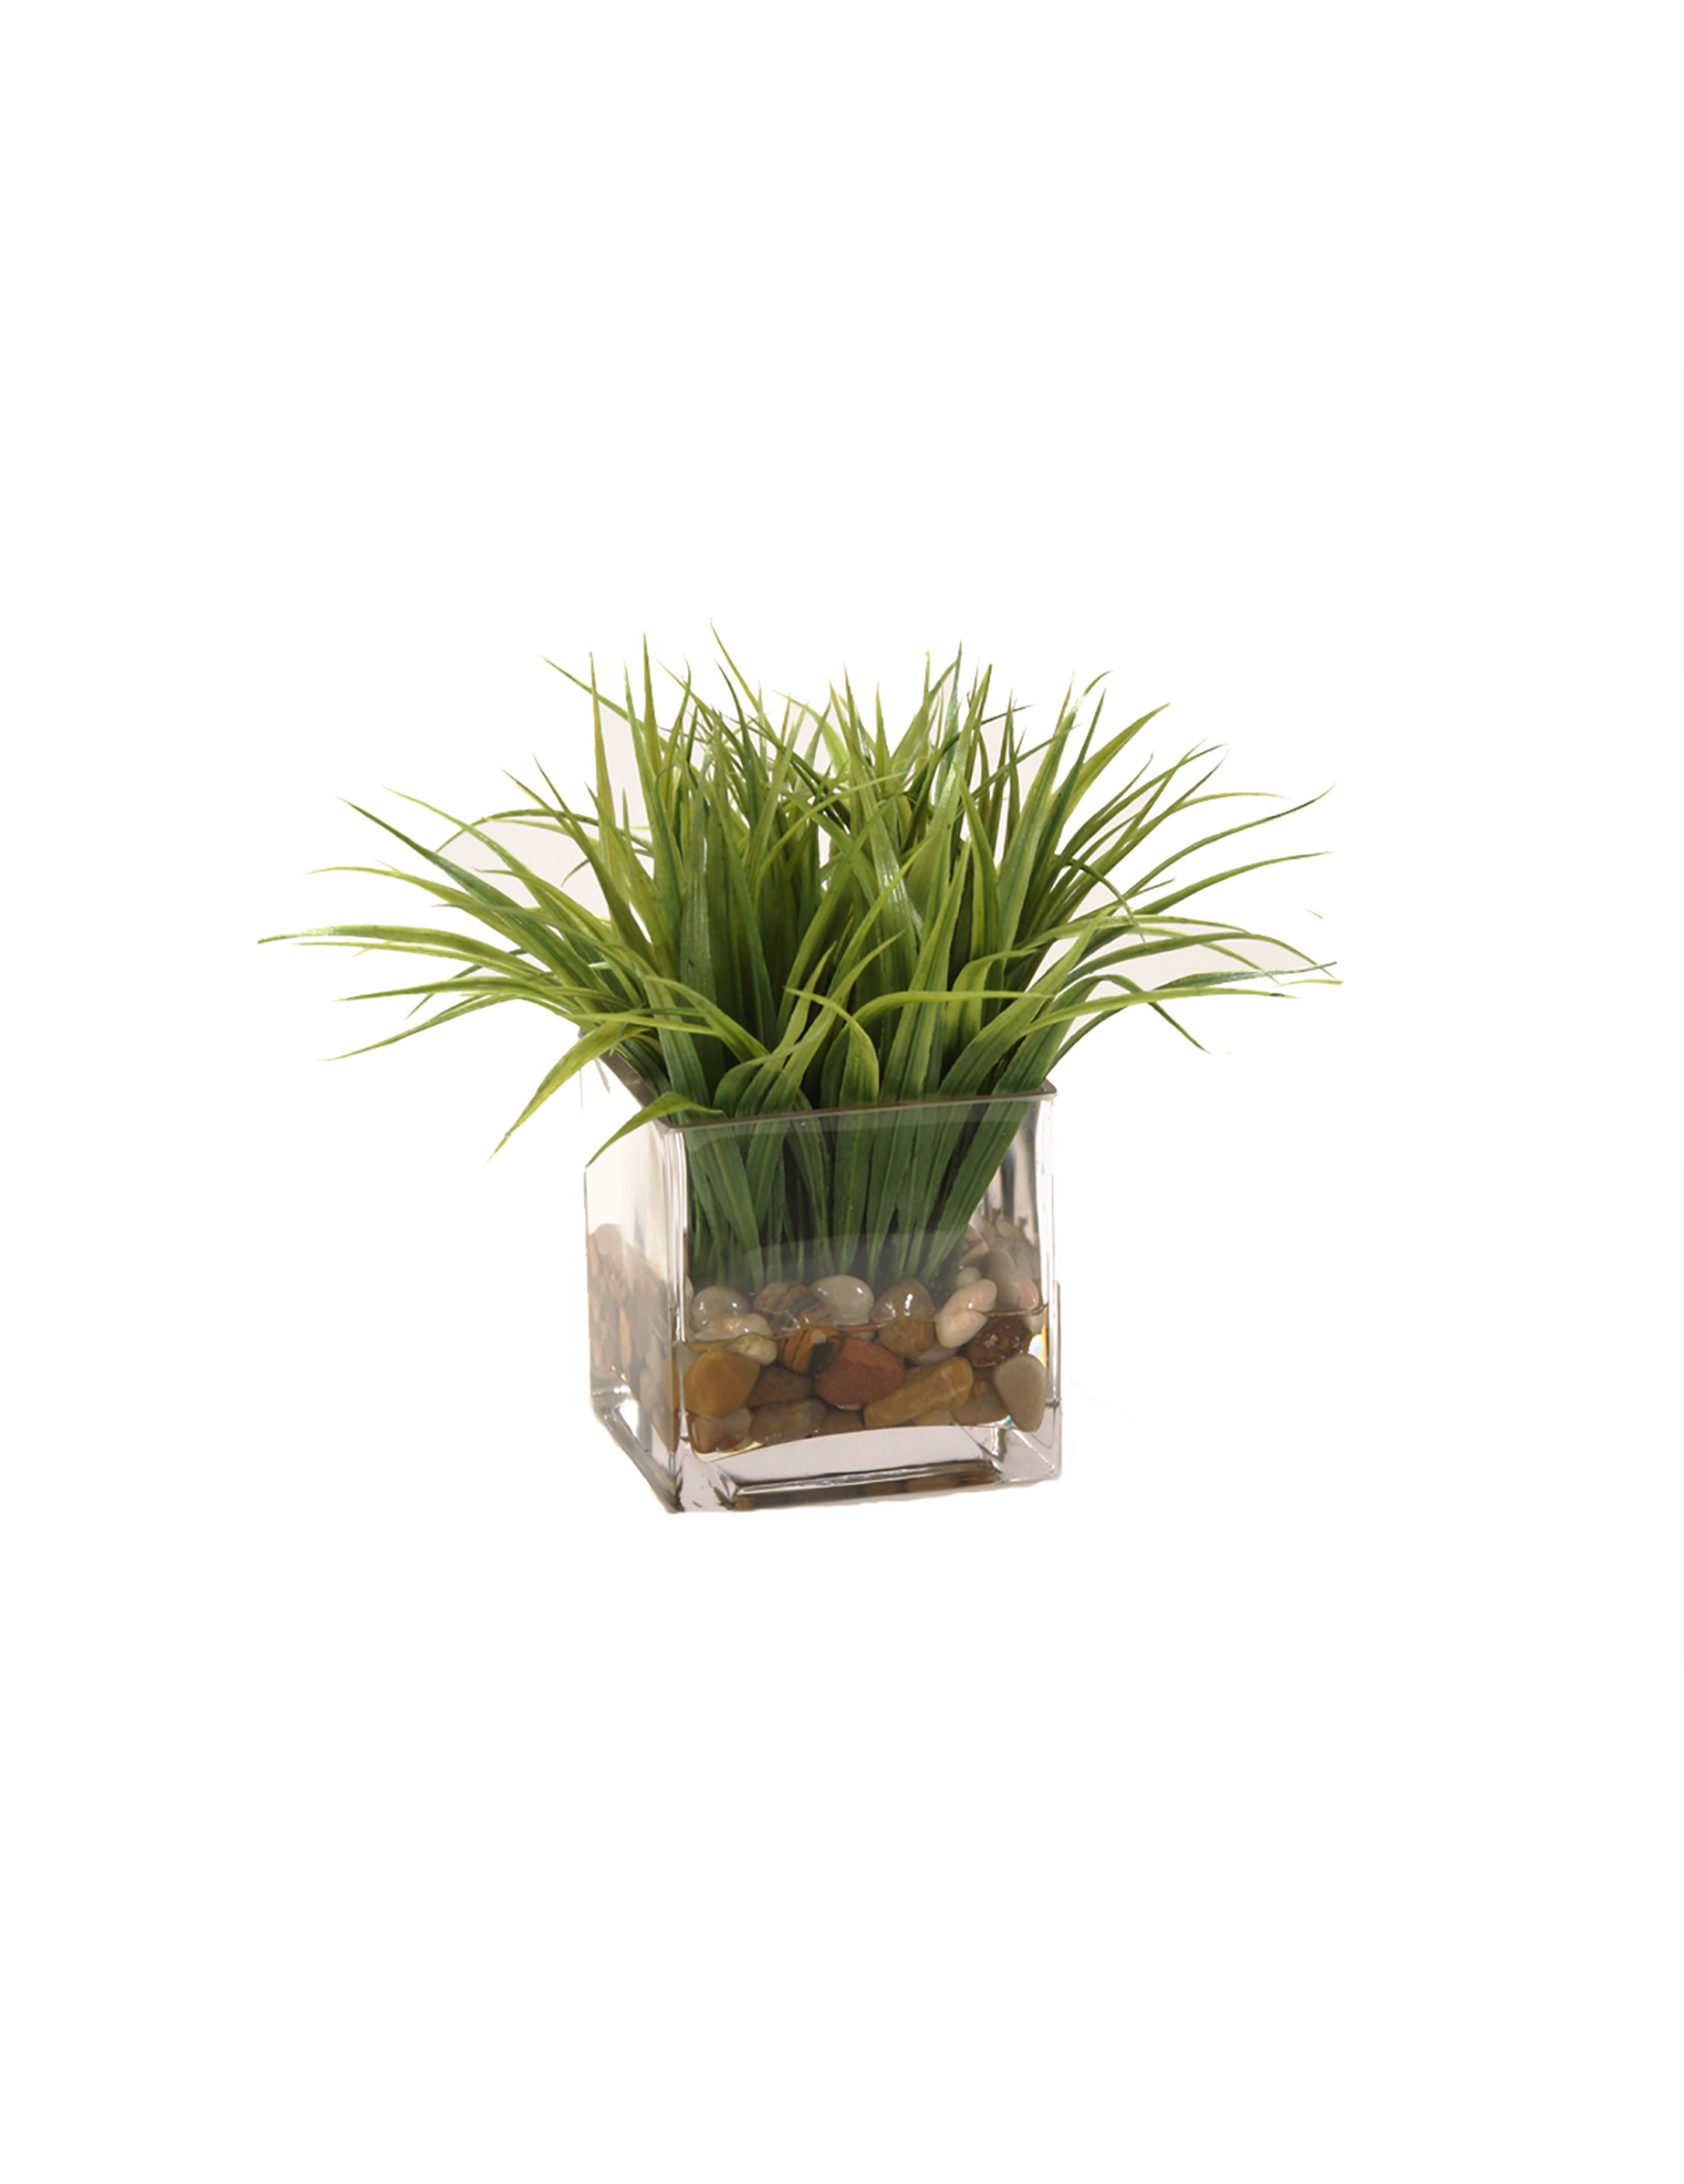 Primrue 7.87'' 3 Piece Faux Greenery Grass Plants in Cement pots